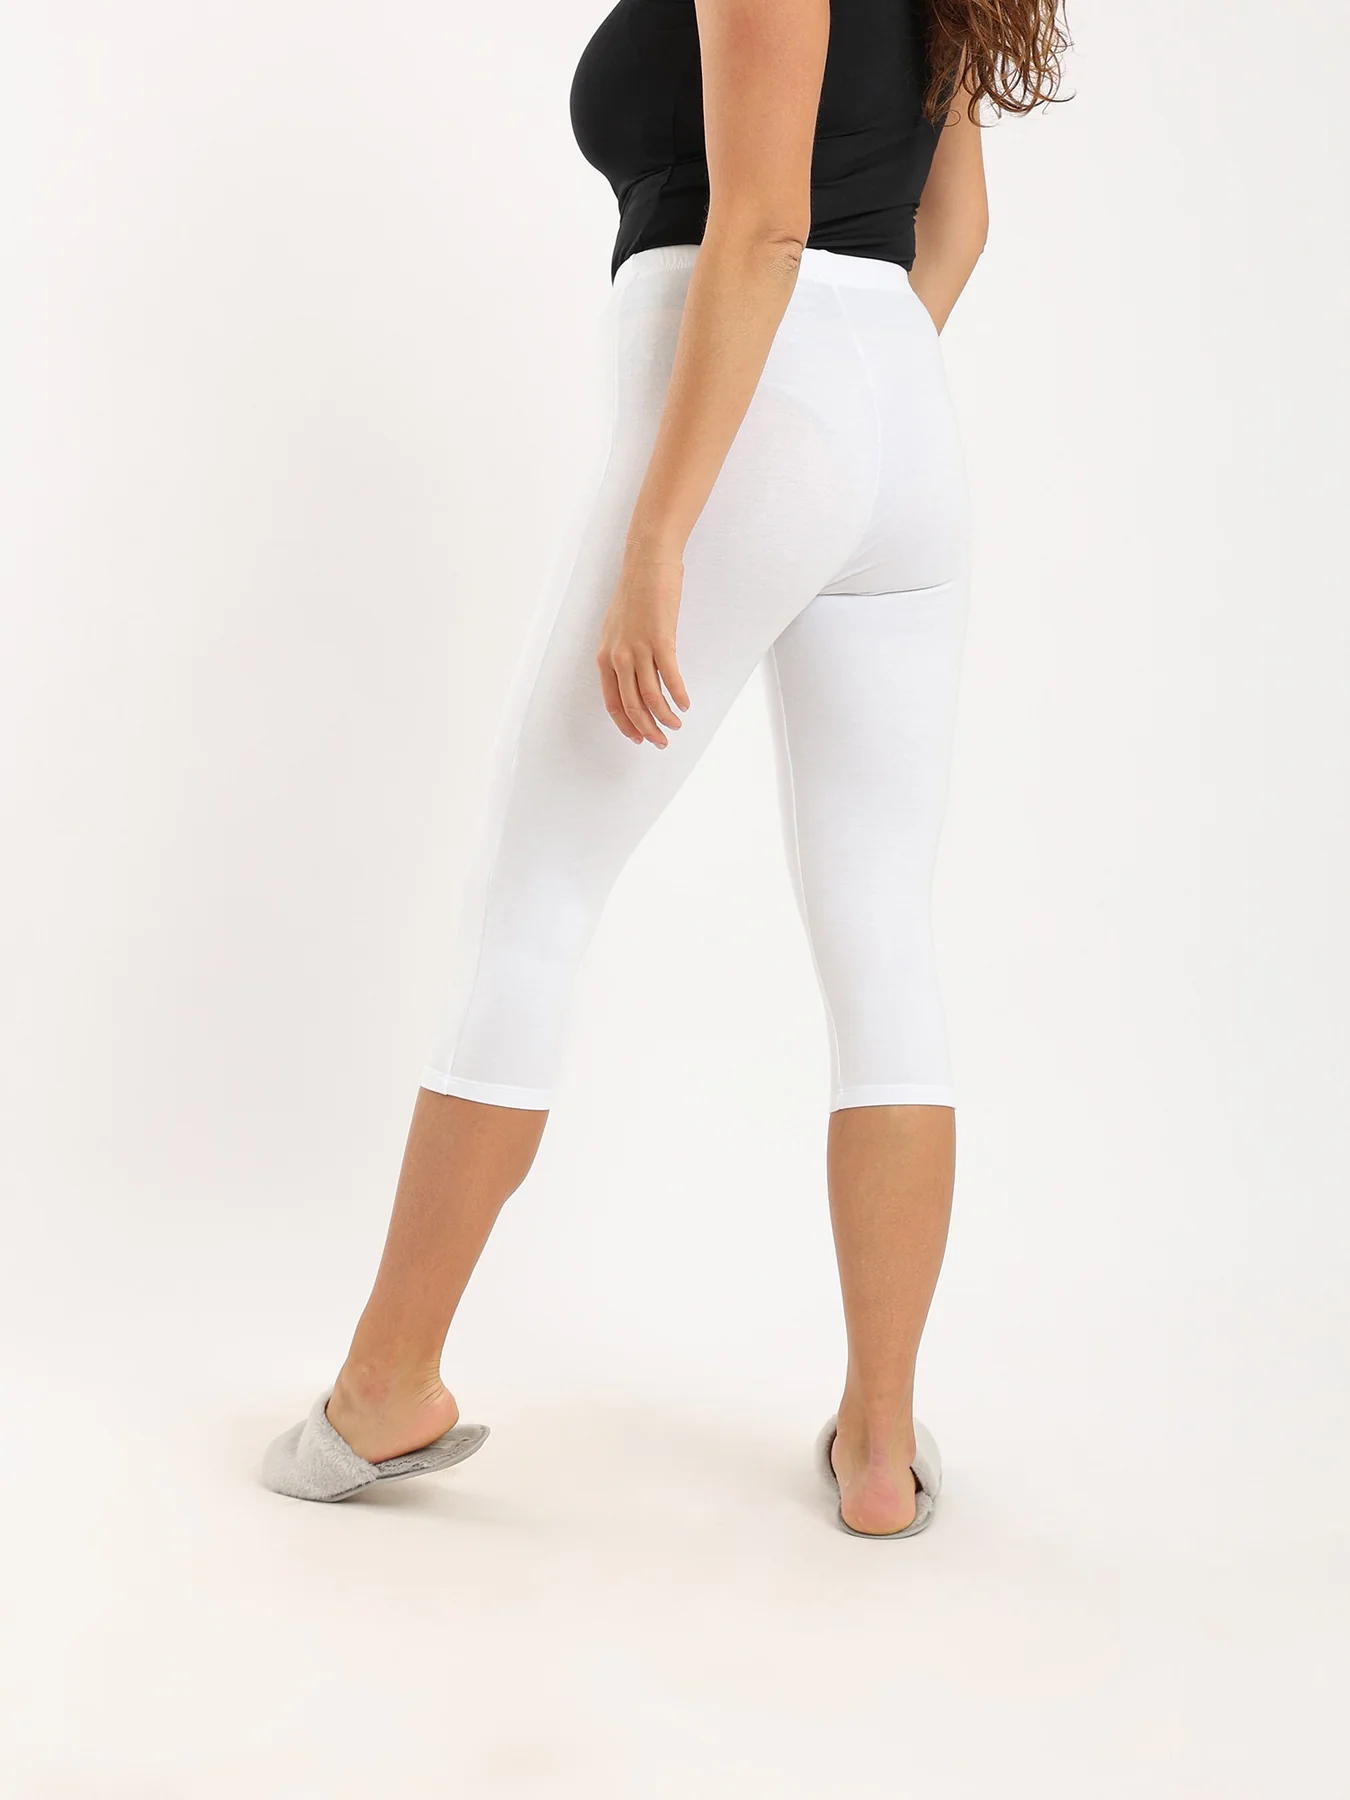 Women's Capri Leggings for Comfort and Style - White